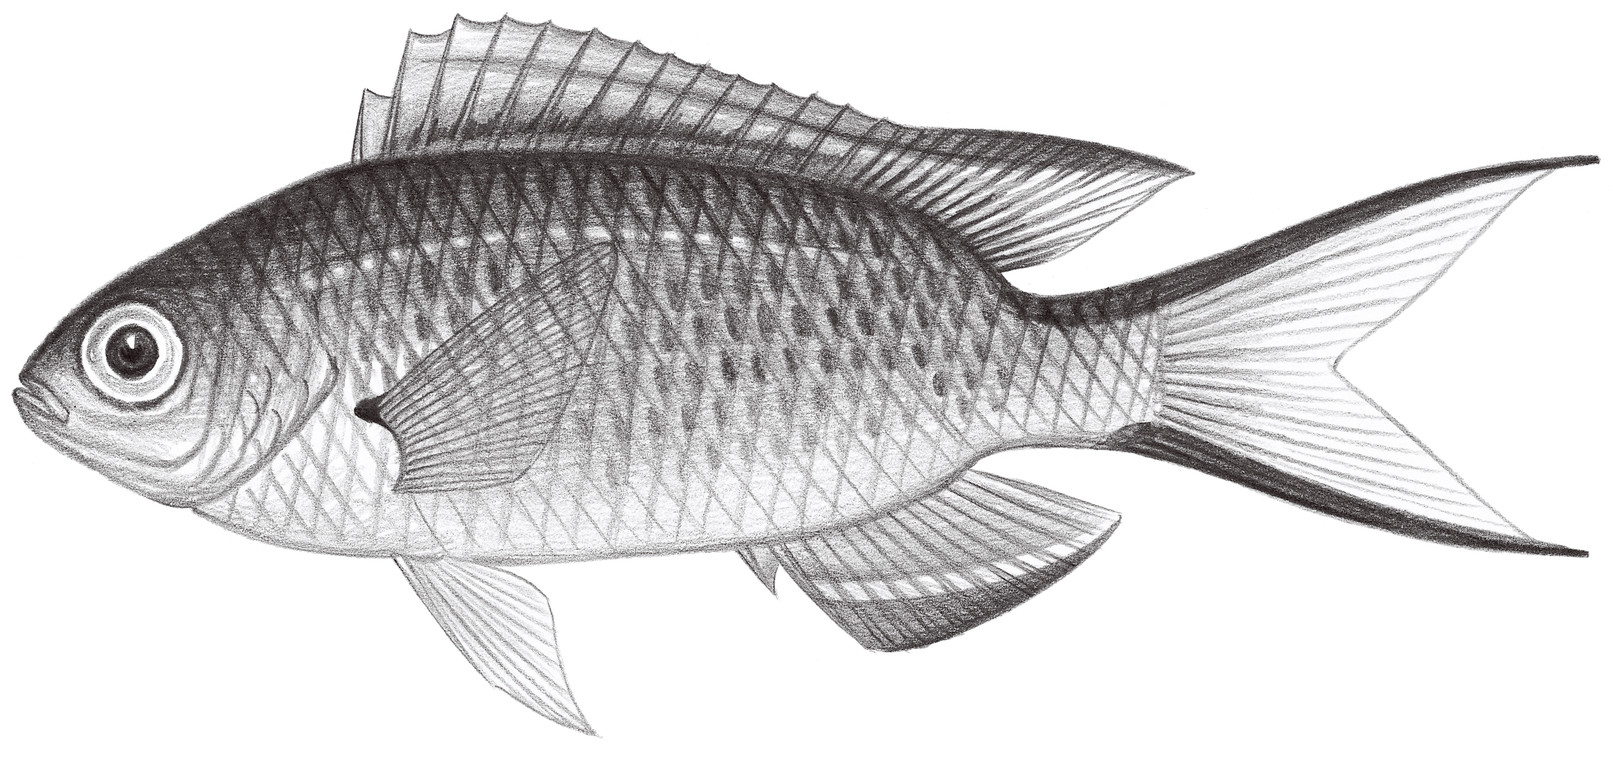 1708.	李氏波光鰓魚 Pomachromis richardsoni (Snyder, 1909)